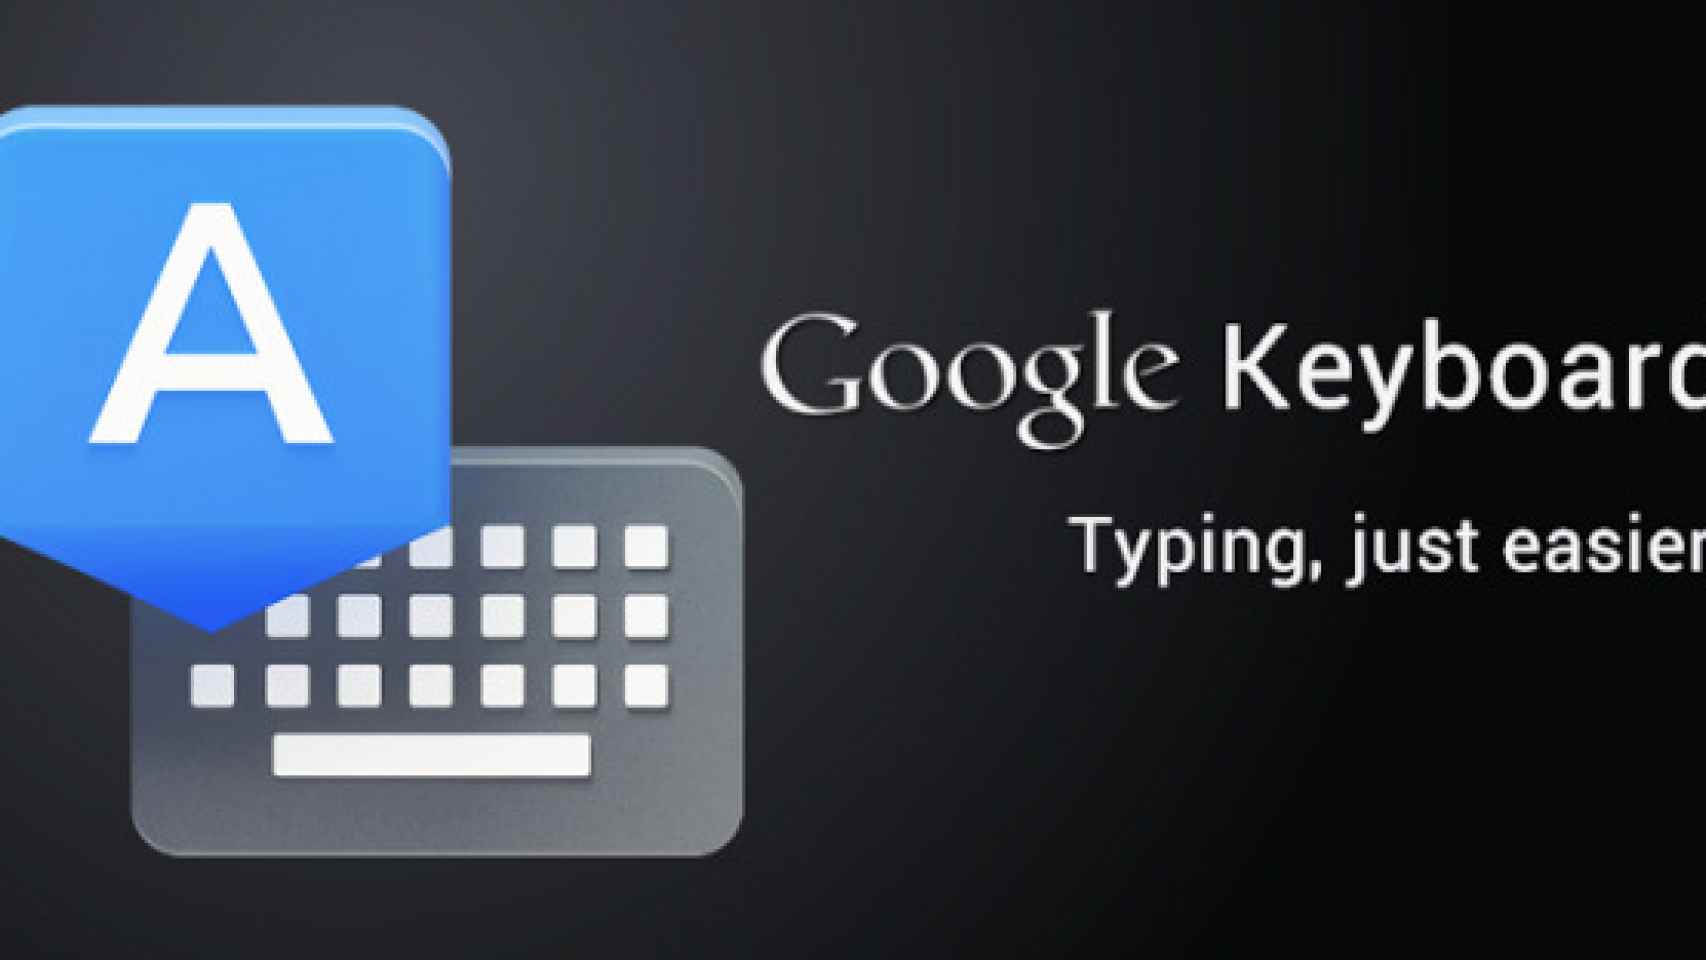 Google Keyboard 2.0 APK o Teclado de Google del Nexus 5 ya disponible para descargar